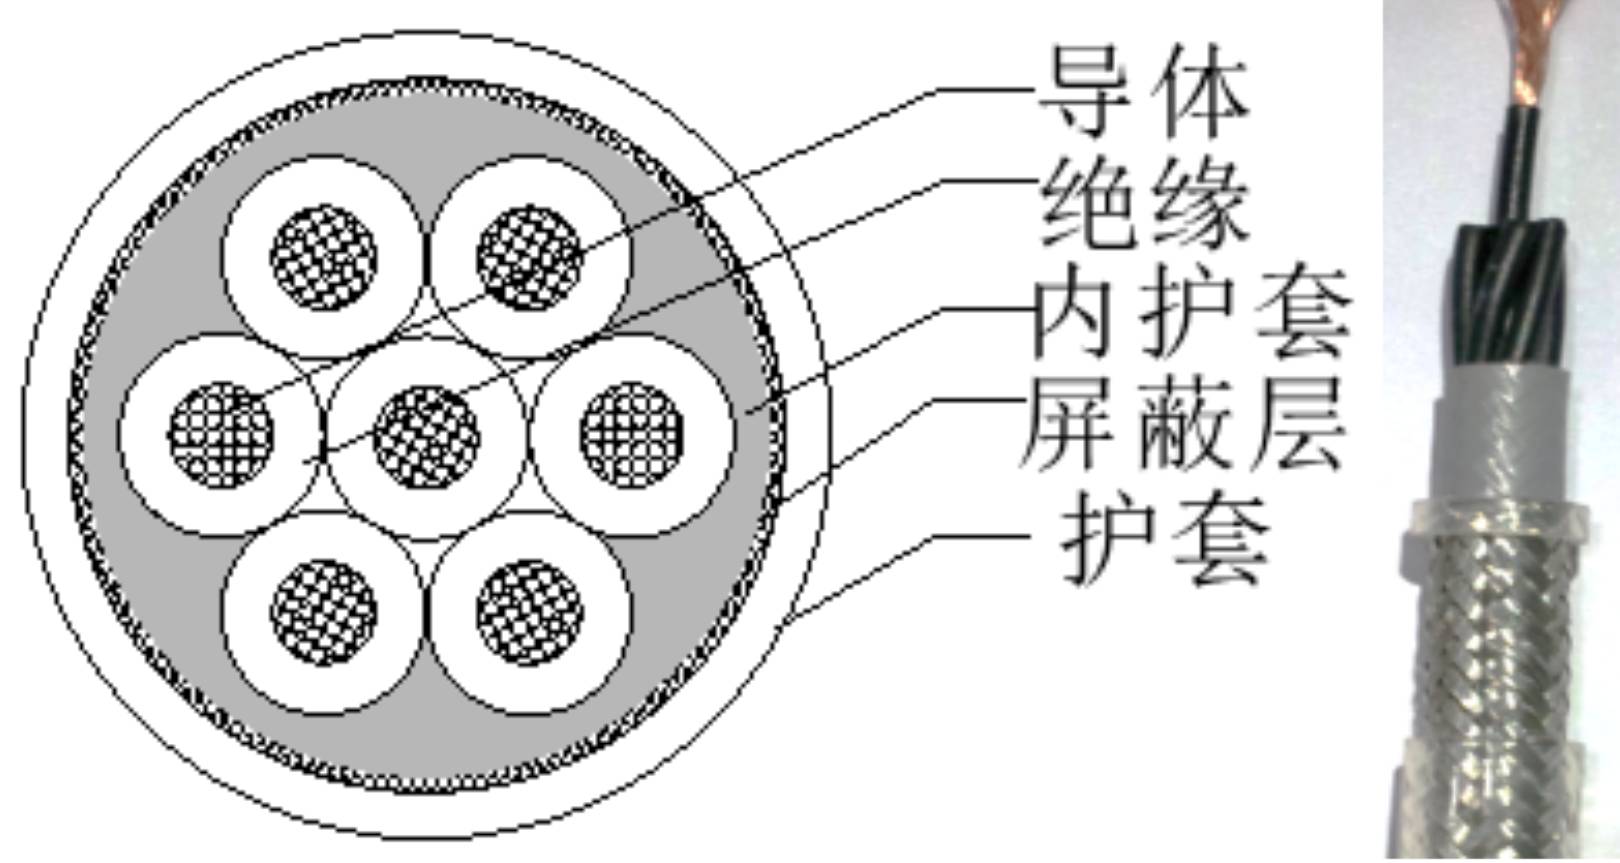 单芯电缆结构示意图图片